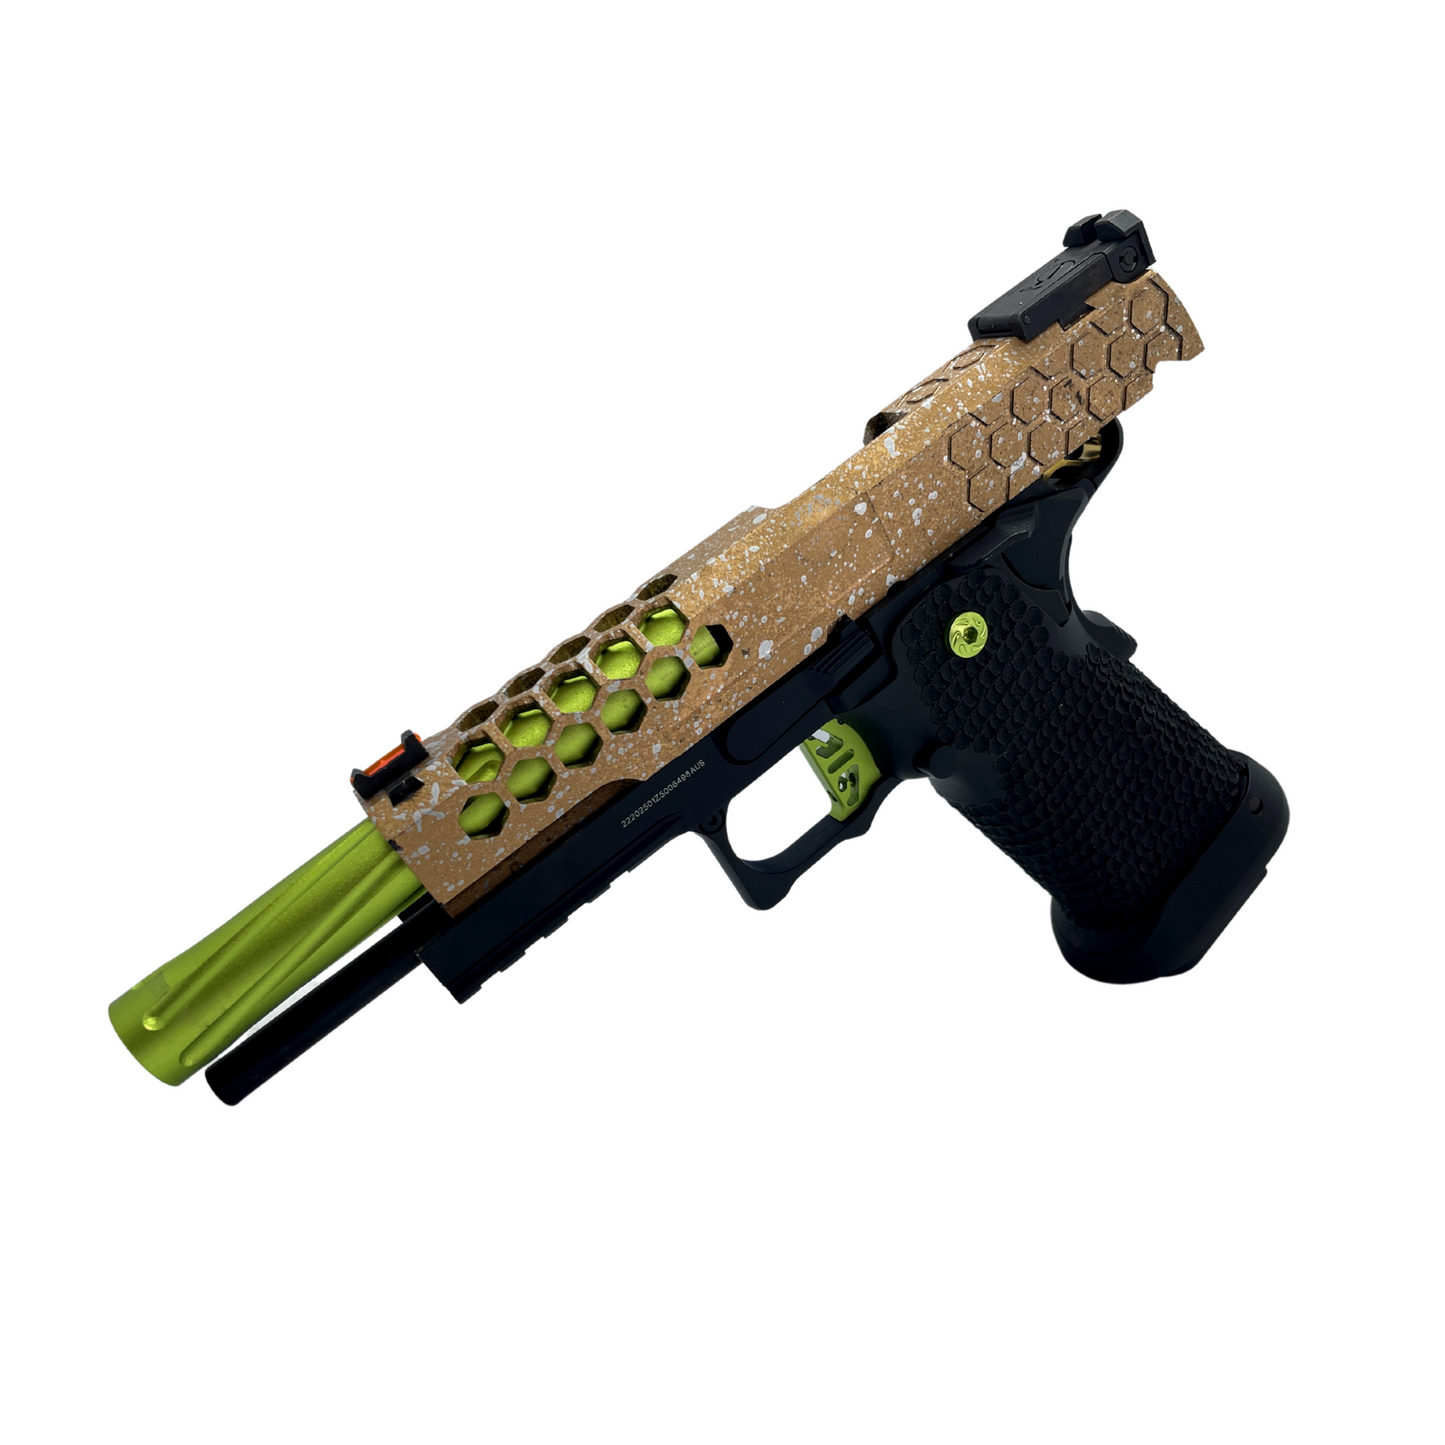 "Parlay" Custom G/E 5.1 Hi-Capa Gas Pistol - Gel Blaster